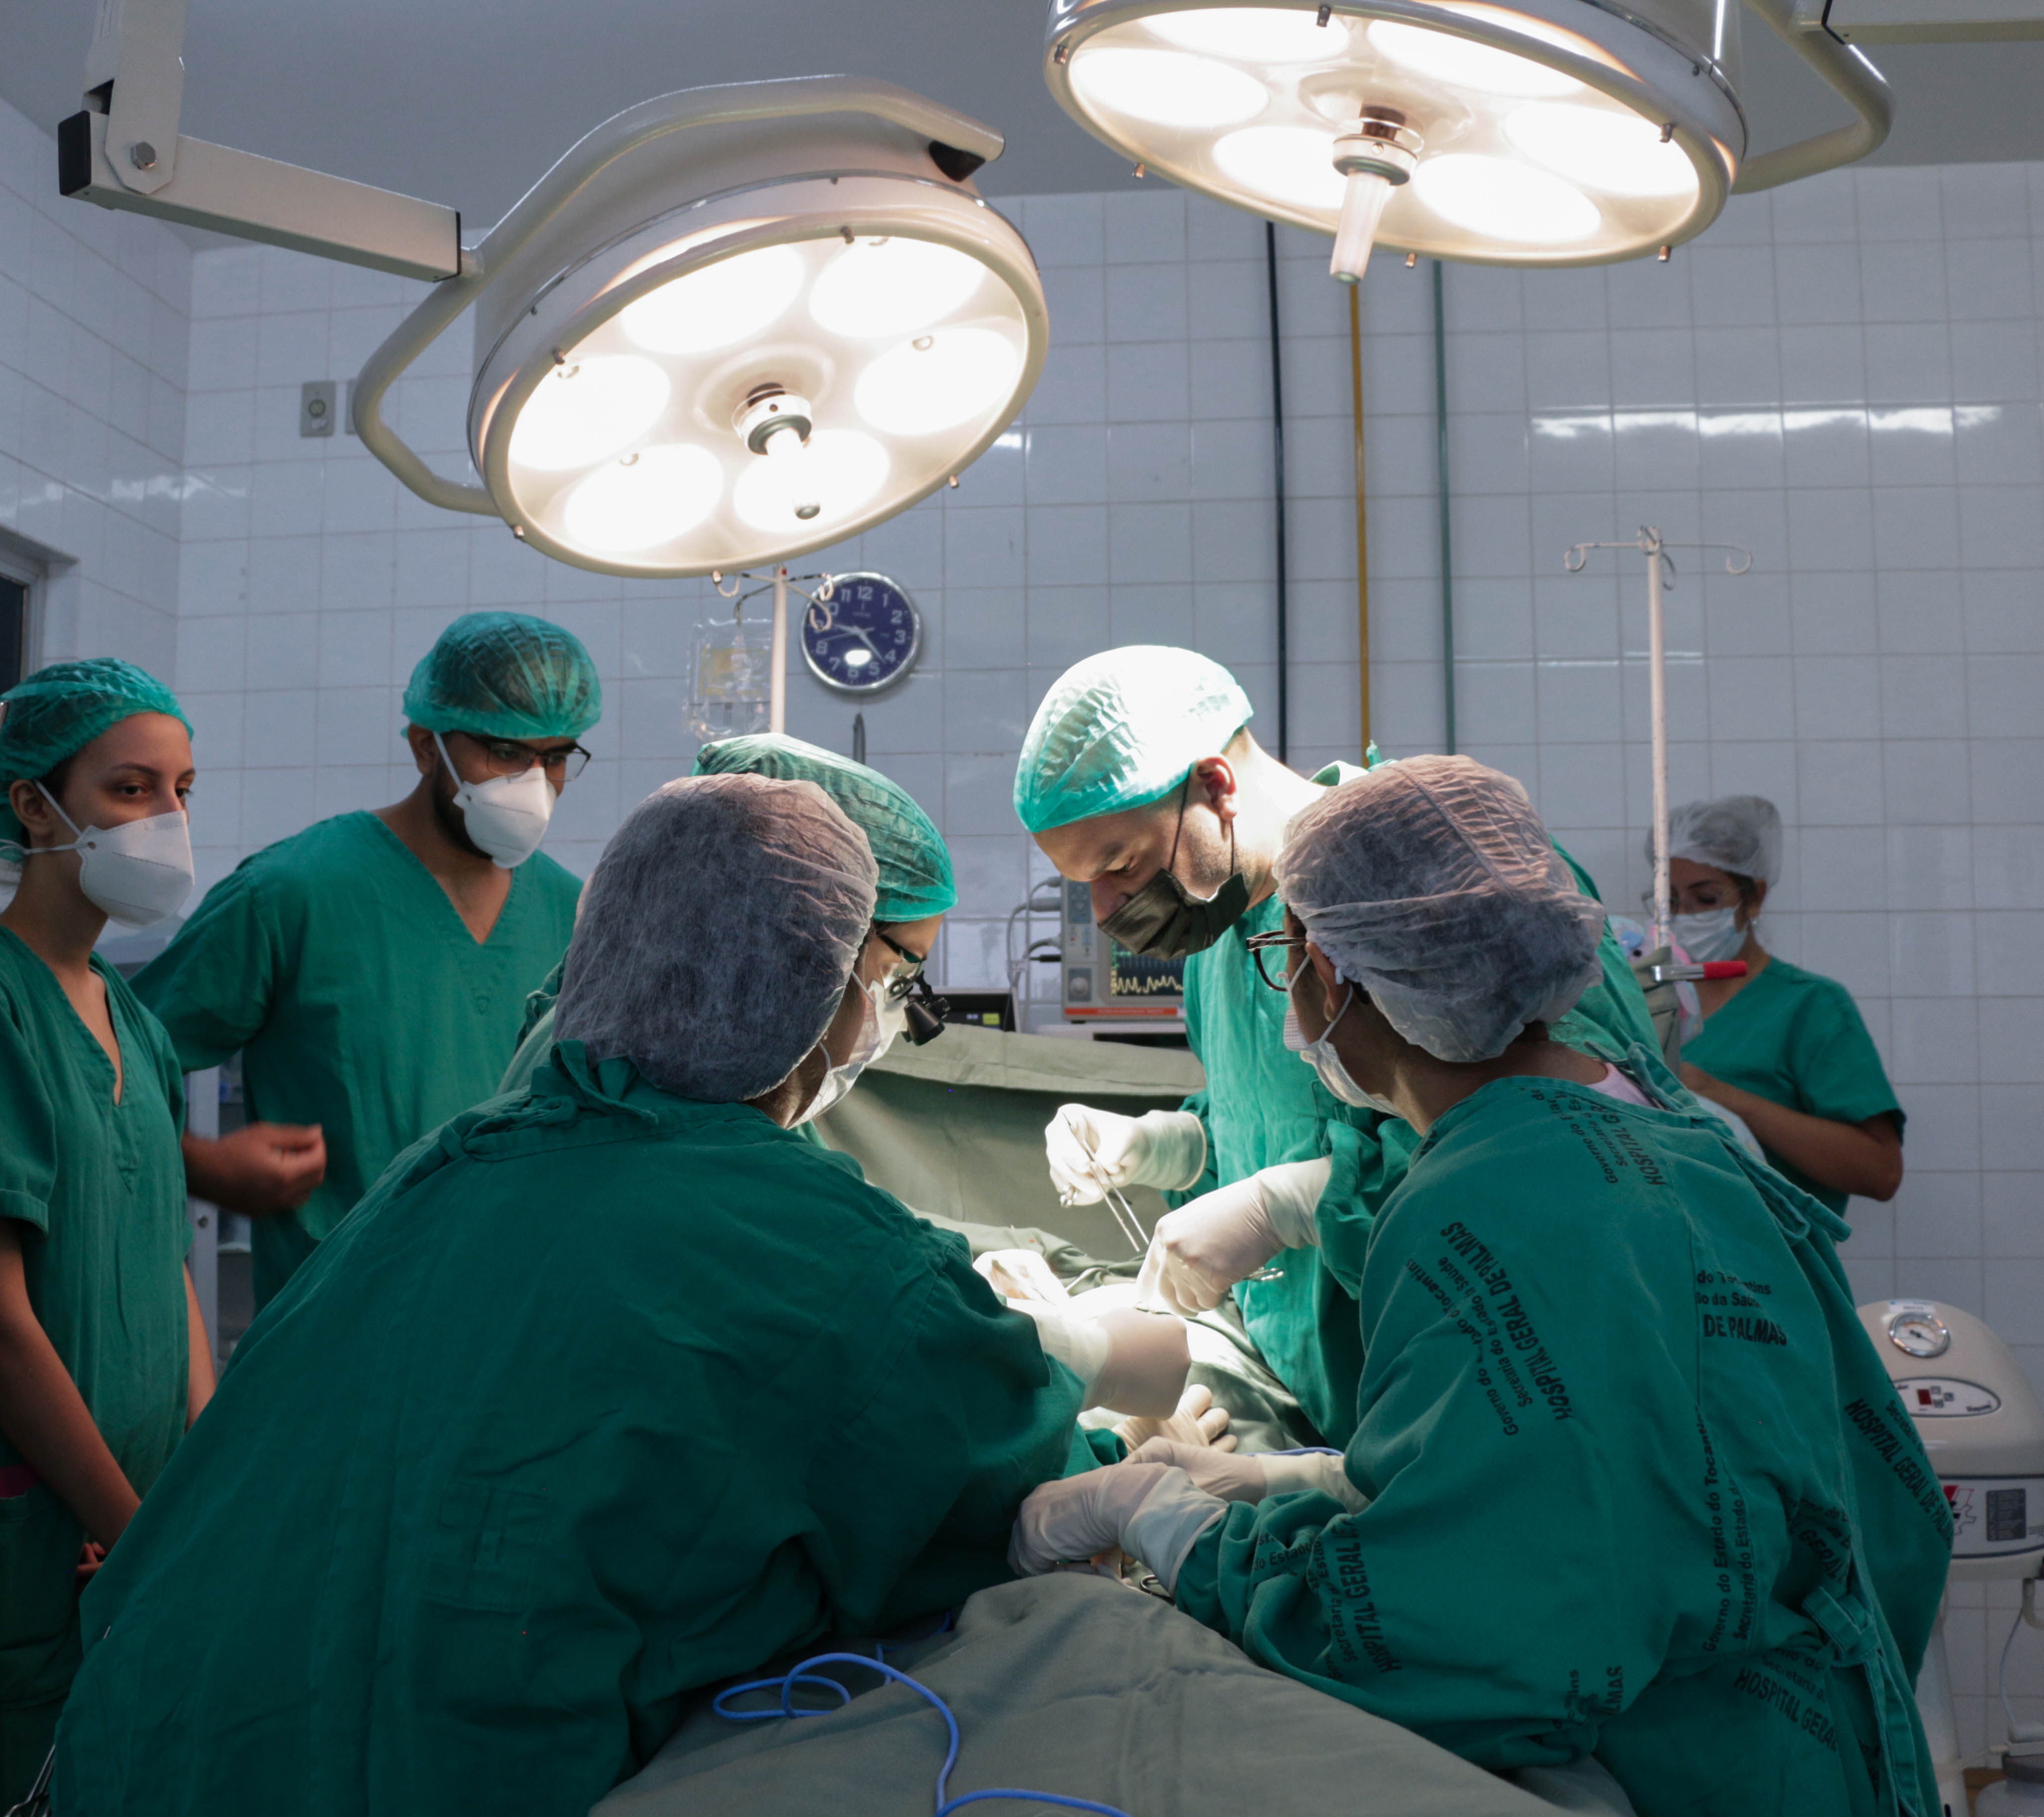 Administrado pelo ISAC e fiscalizado pela Prefeitura de Araguaína, o HMA possui o selo Acreditação Qmentum Internacional, com nível de excelência “Diamante”, e é o segundo hospital do Norte do país contemplado com o prêmio “Melhores Hospitais Públicos do Brasil